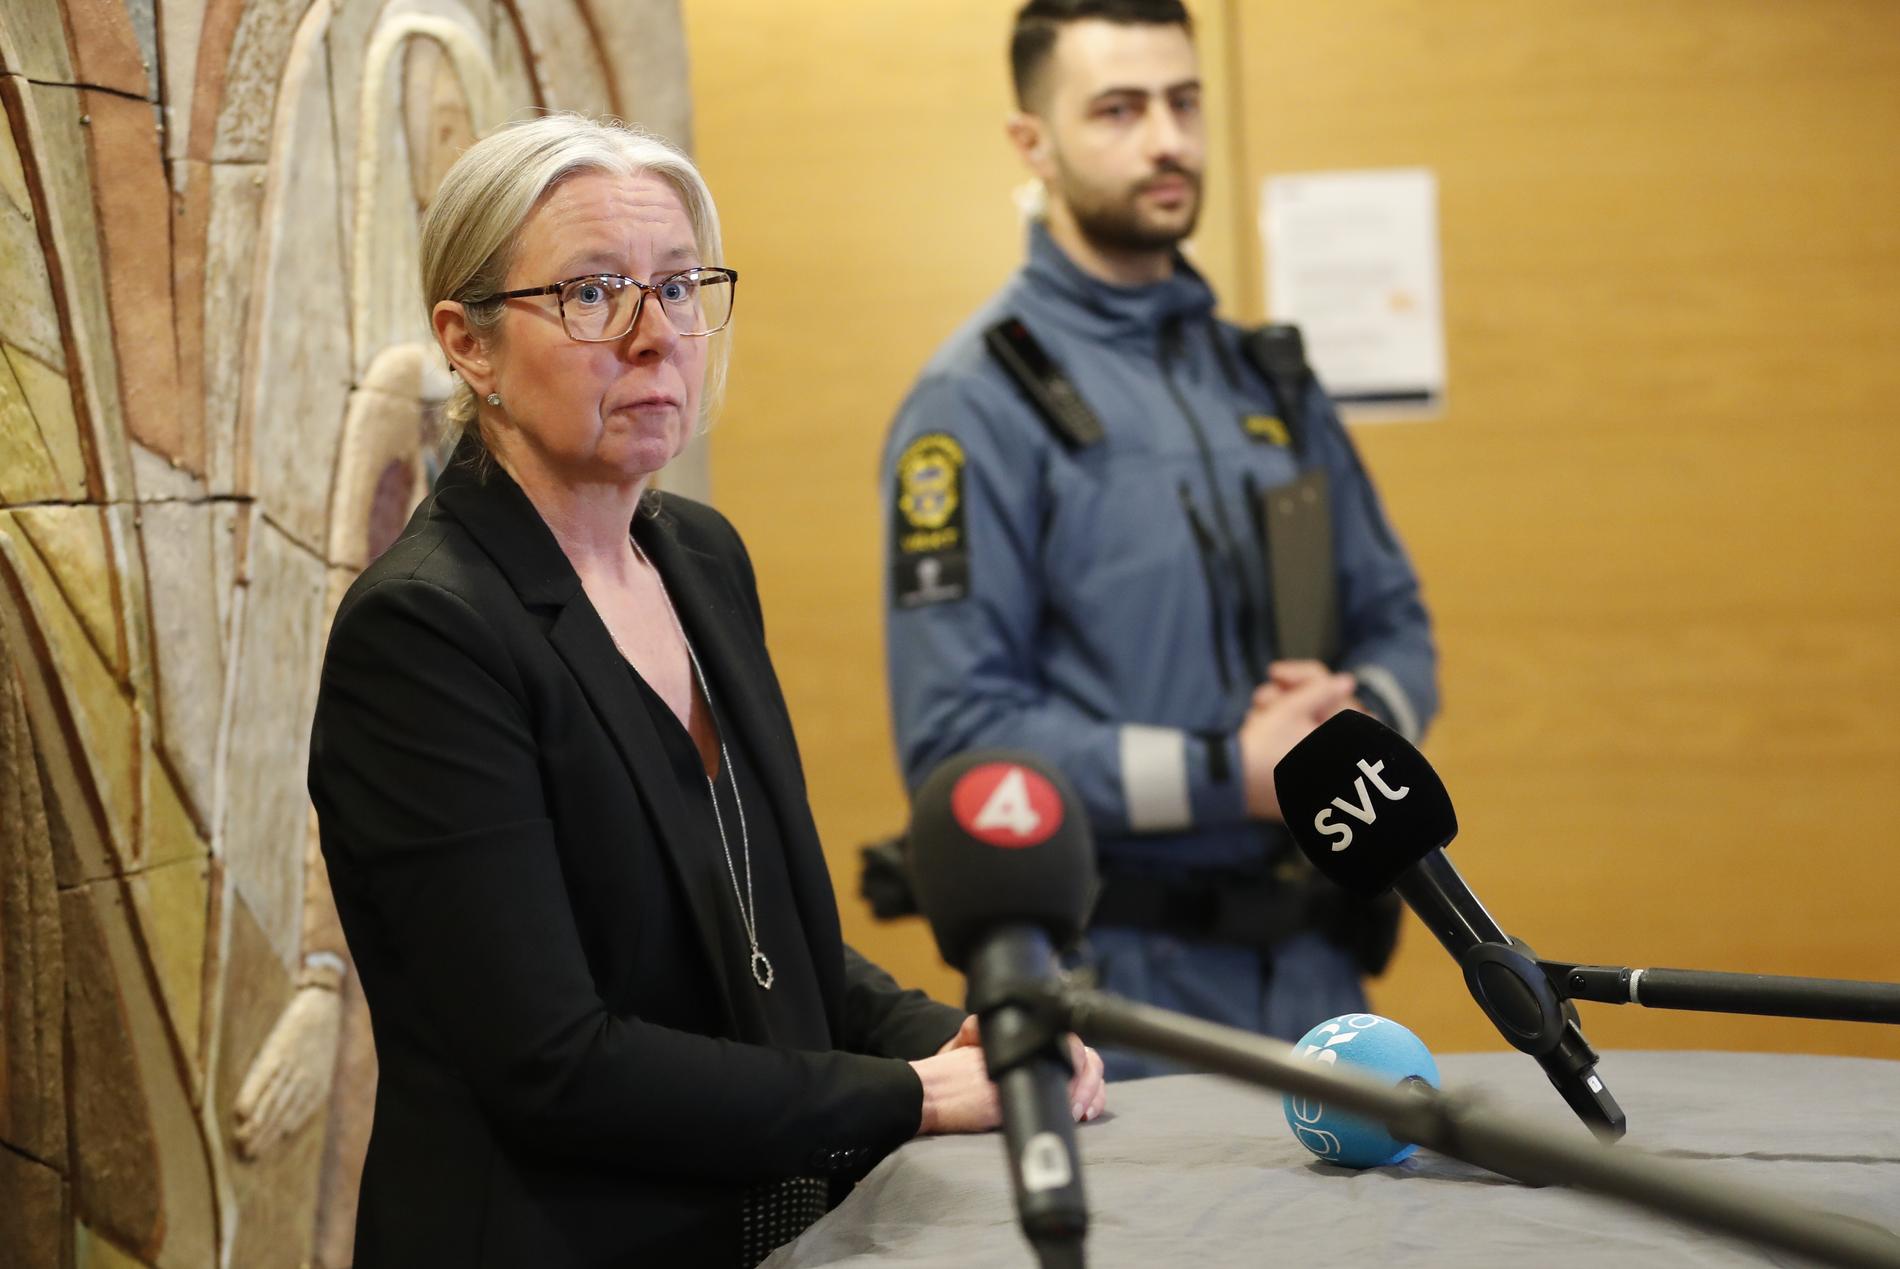 Åklagaren Annika Bokefors begärde toppjuristen häktad vid en förhandling i Uppsala tingsrätt 11 mars. Mannen satt häktad mellan den 8 och 23 mars. Arkivbild.